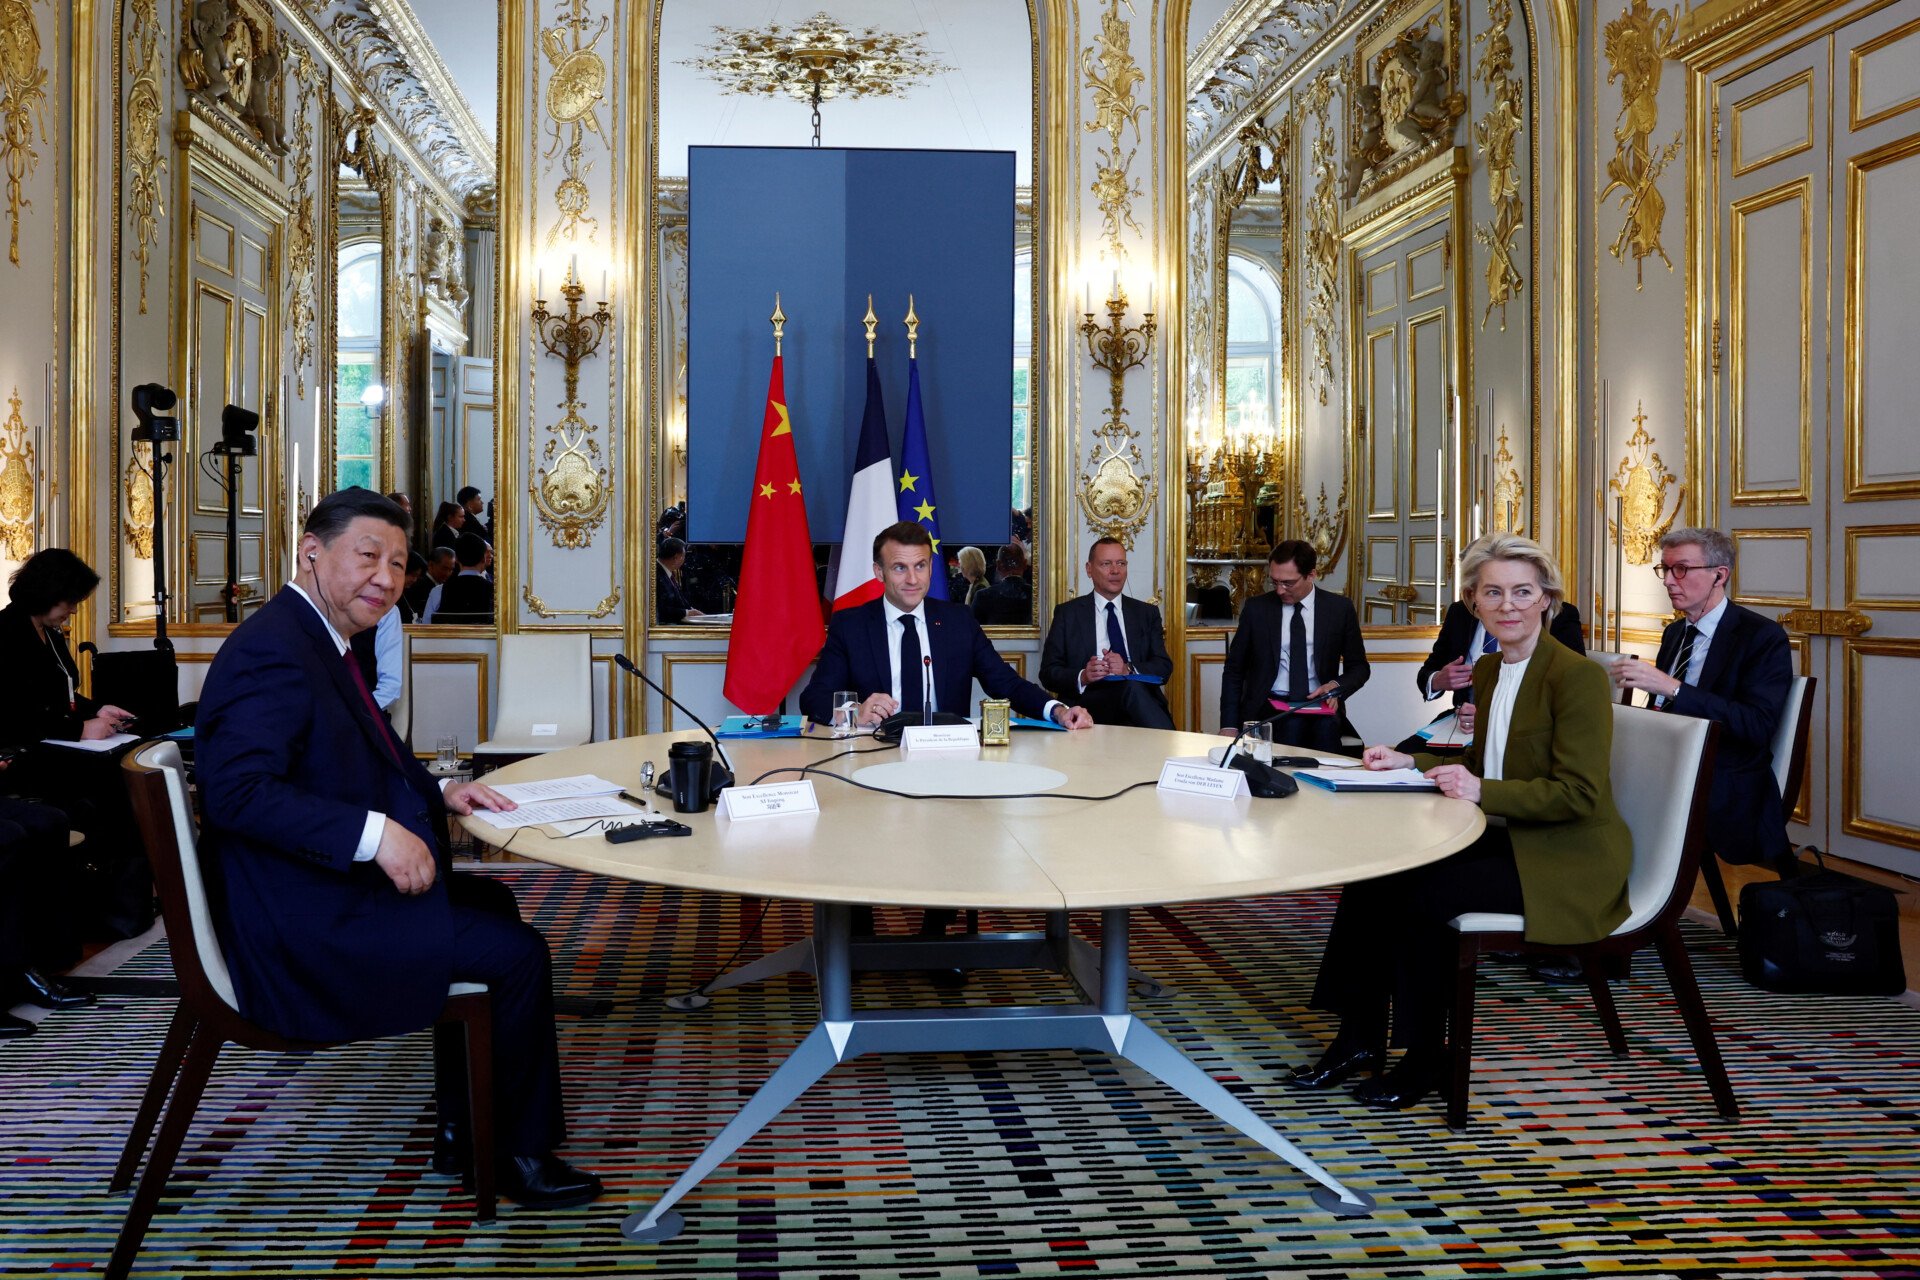 μακρόν-σι: ισότιμους κανόνες για όλους ζήτησε ο γάλλος πρόεδρος